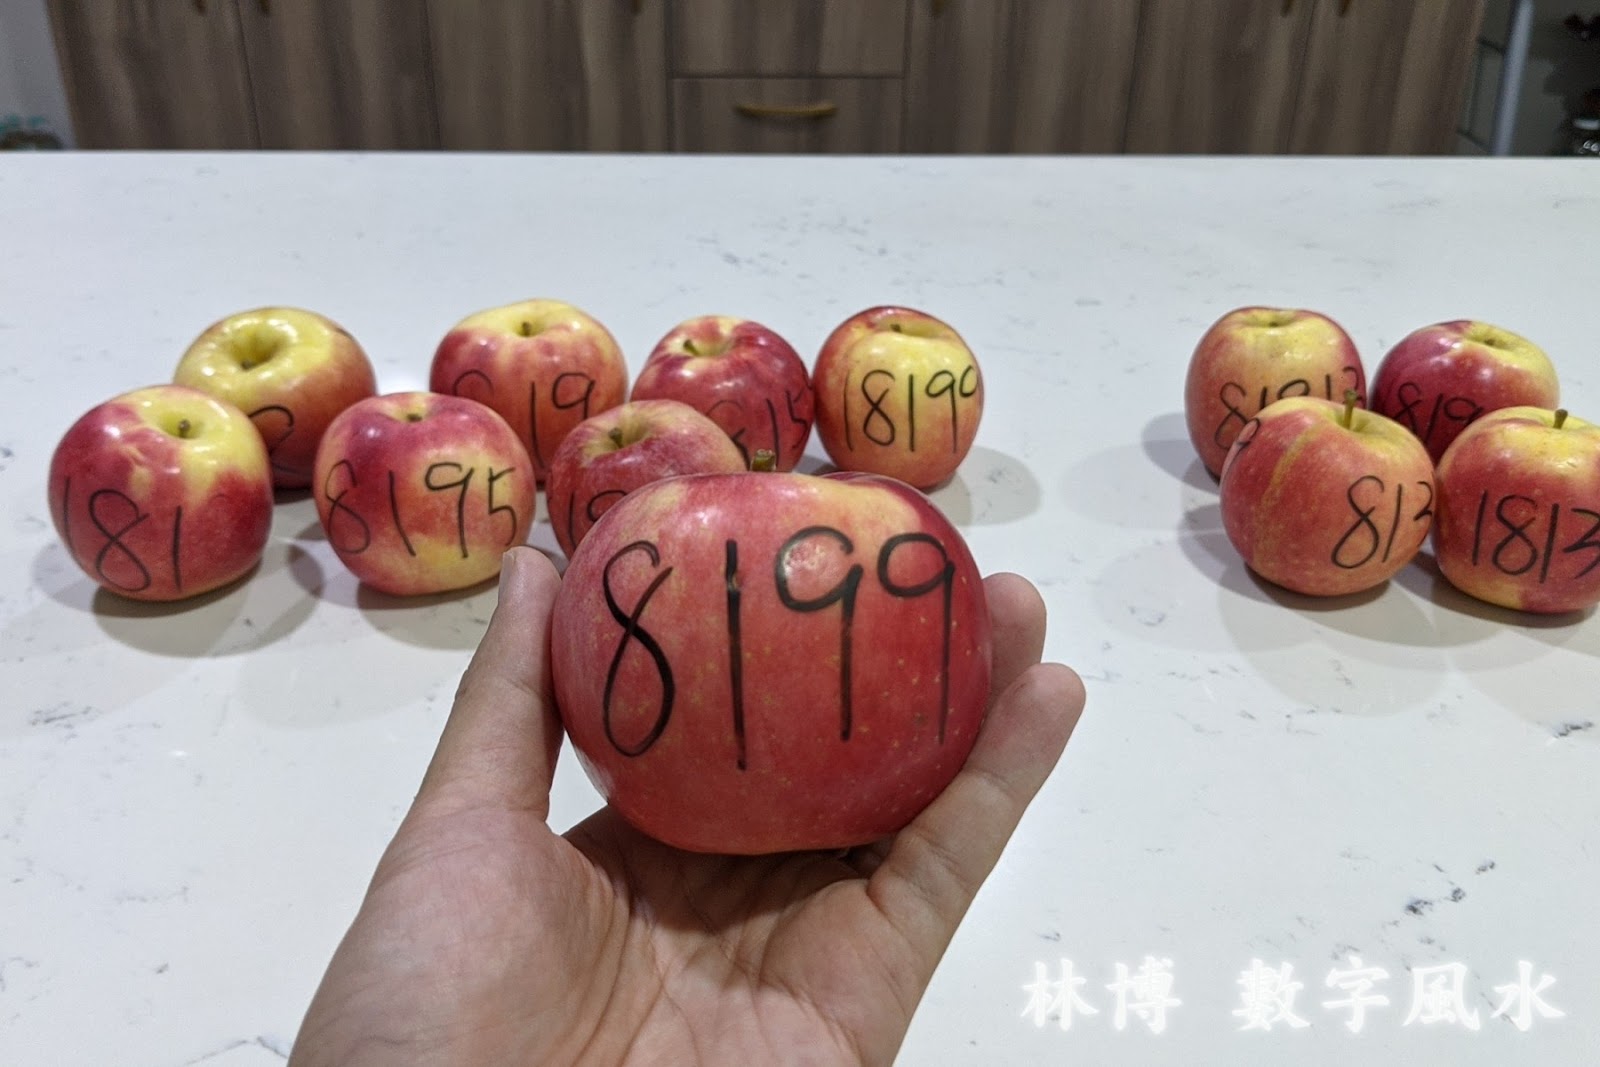 十顆蘋果分別寫上不同的數字，來觀察五鬼磁場對其腐爛的影響，這一顆是 8199